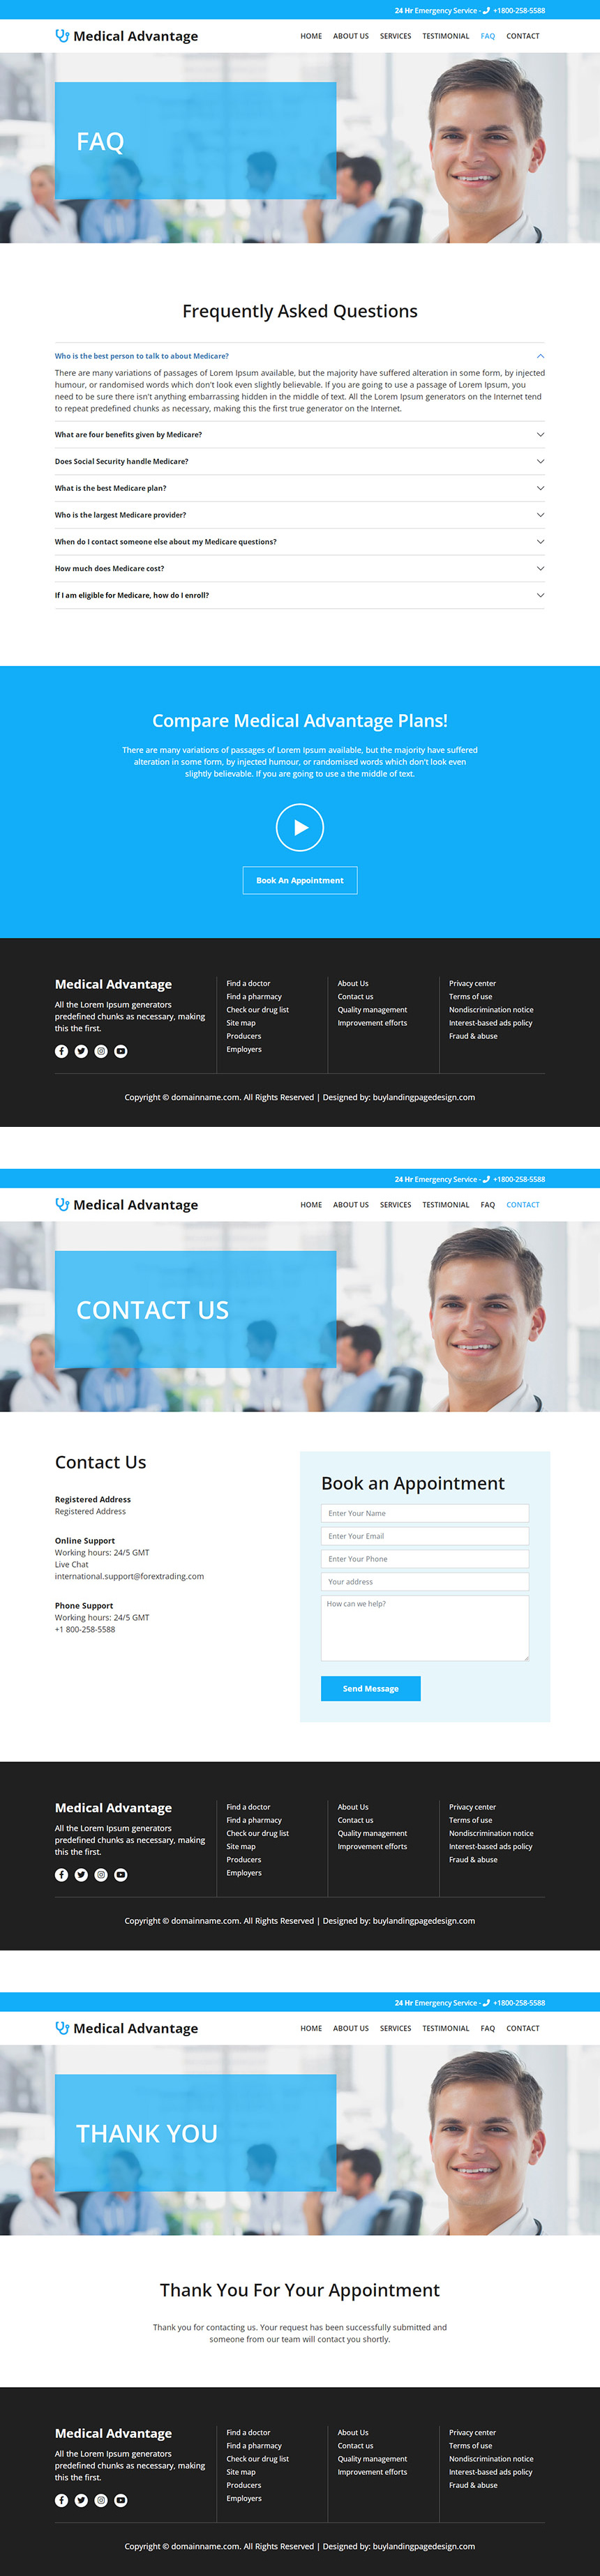 emergency medical services responsive website design